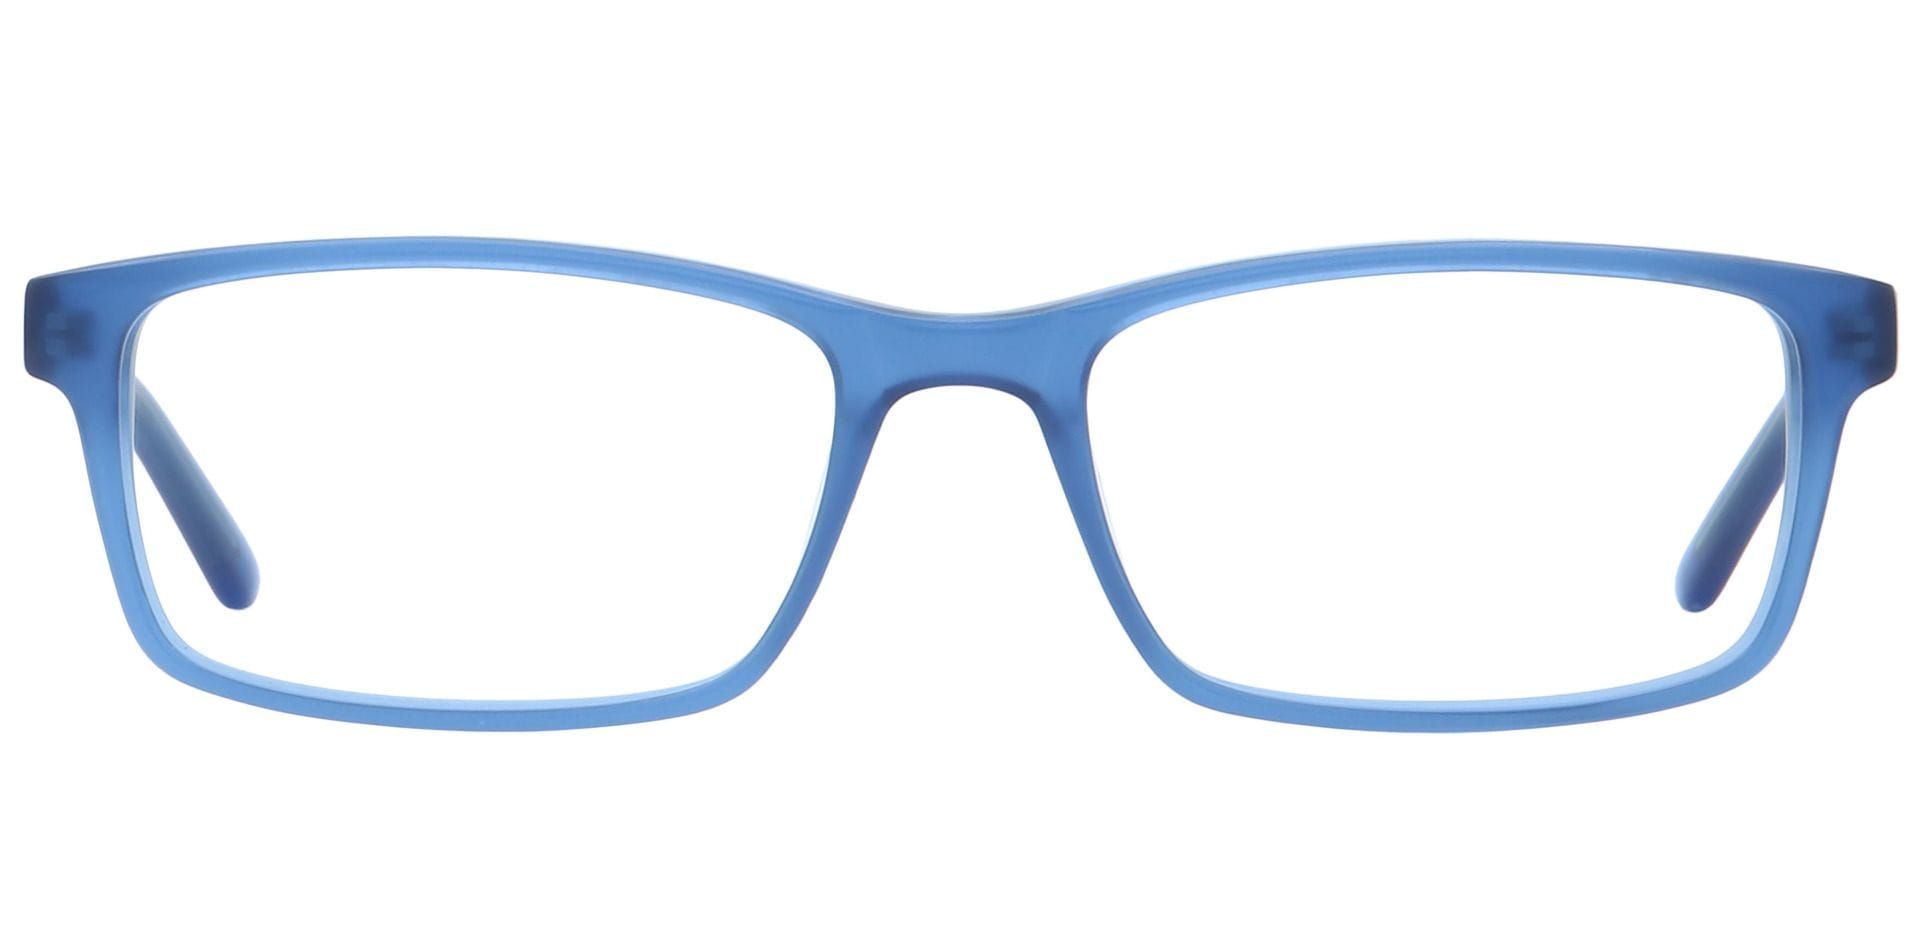 Suave Rectangle Blue Light Blocking Glasses - Blue